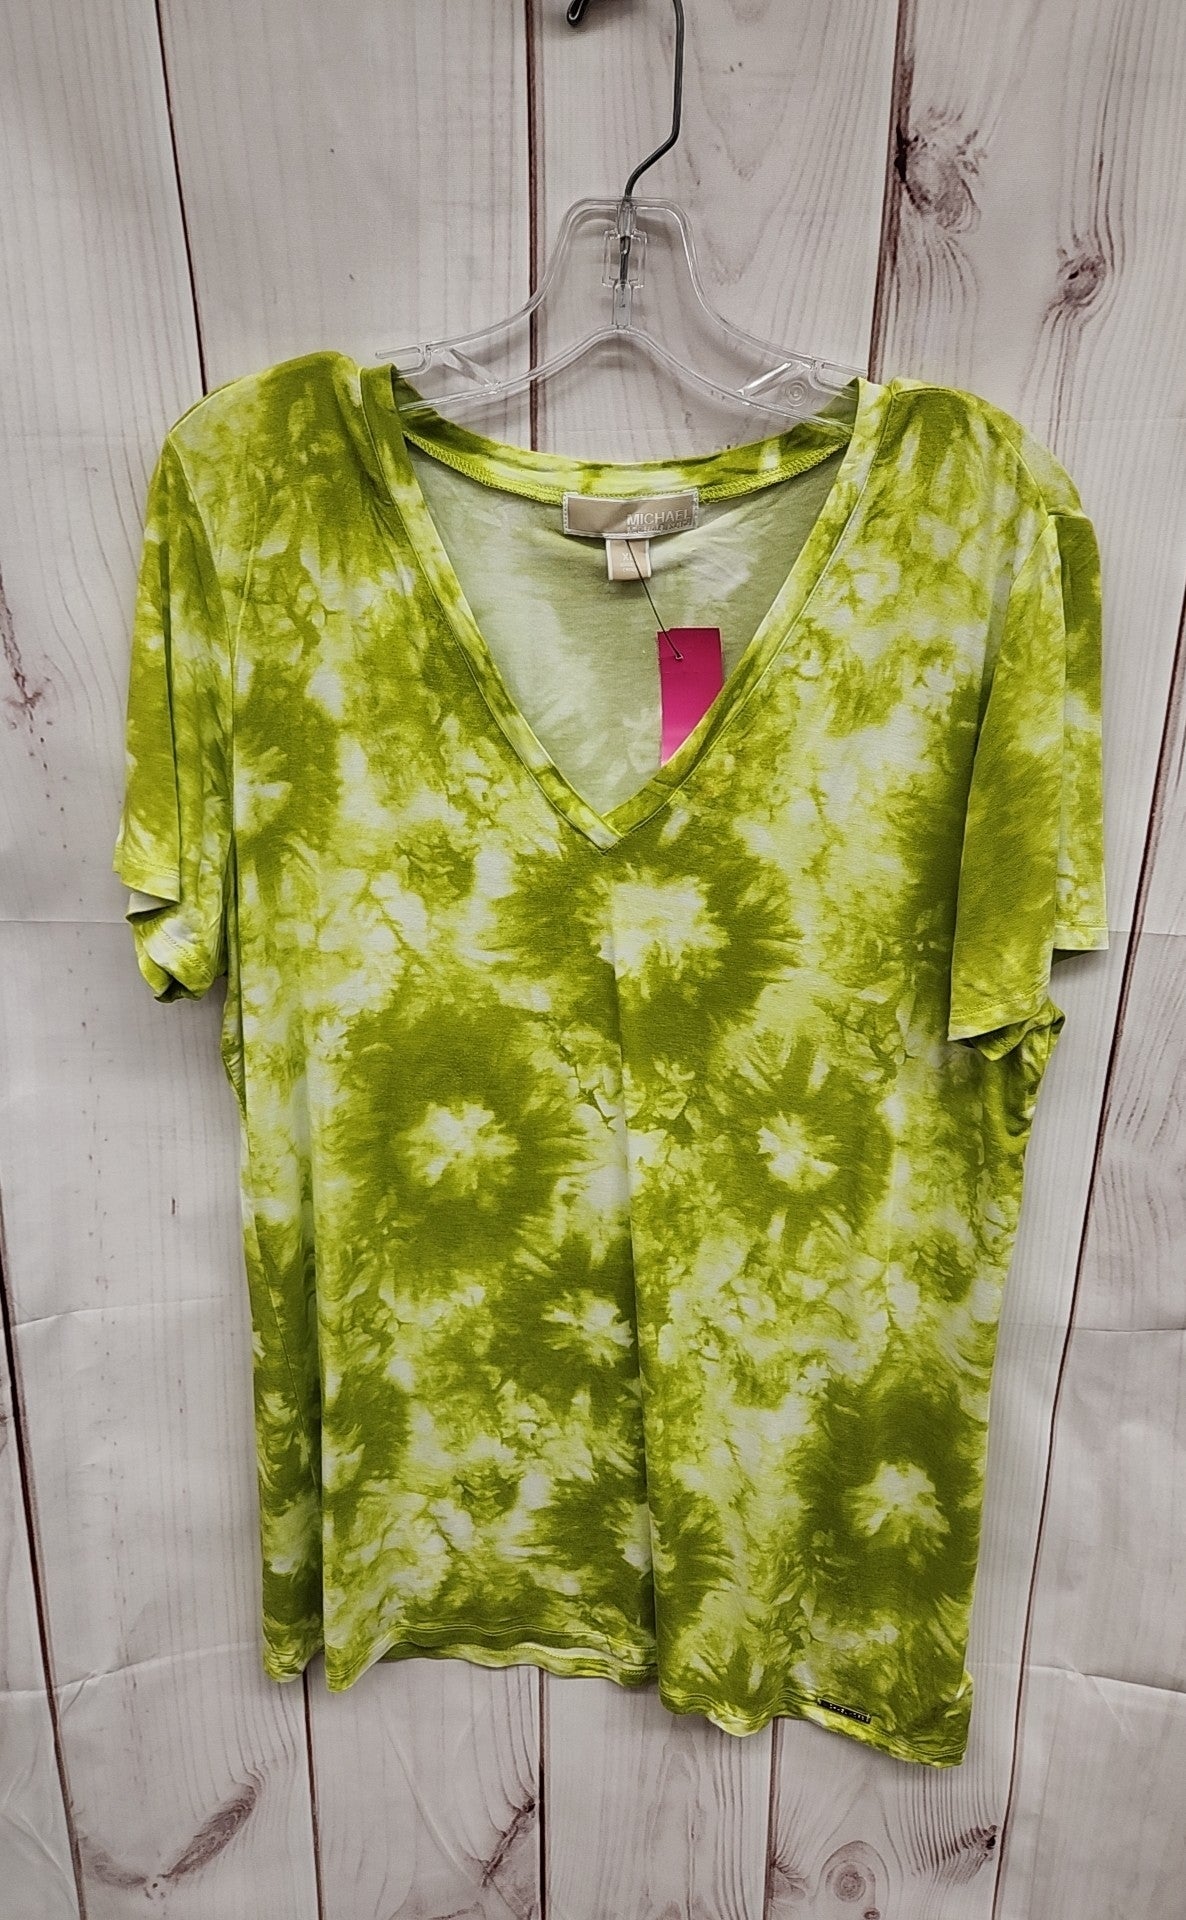 Michael Kors Women's Size XL Green Short Sleeve Top